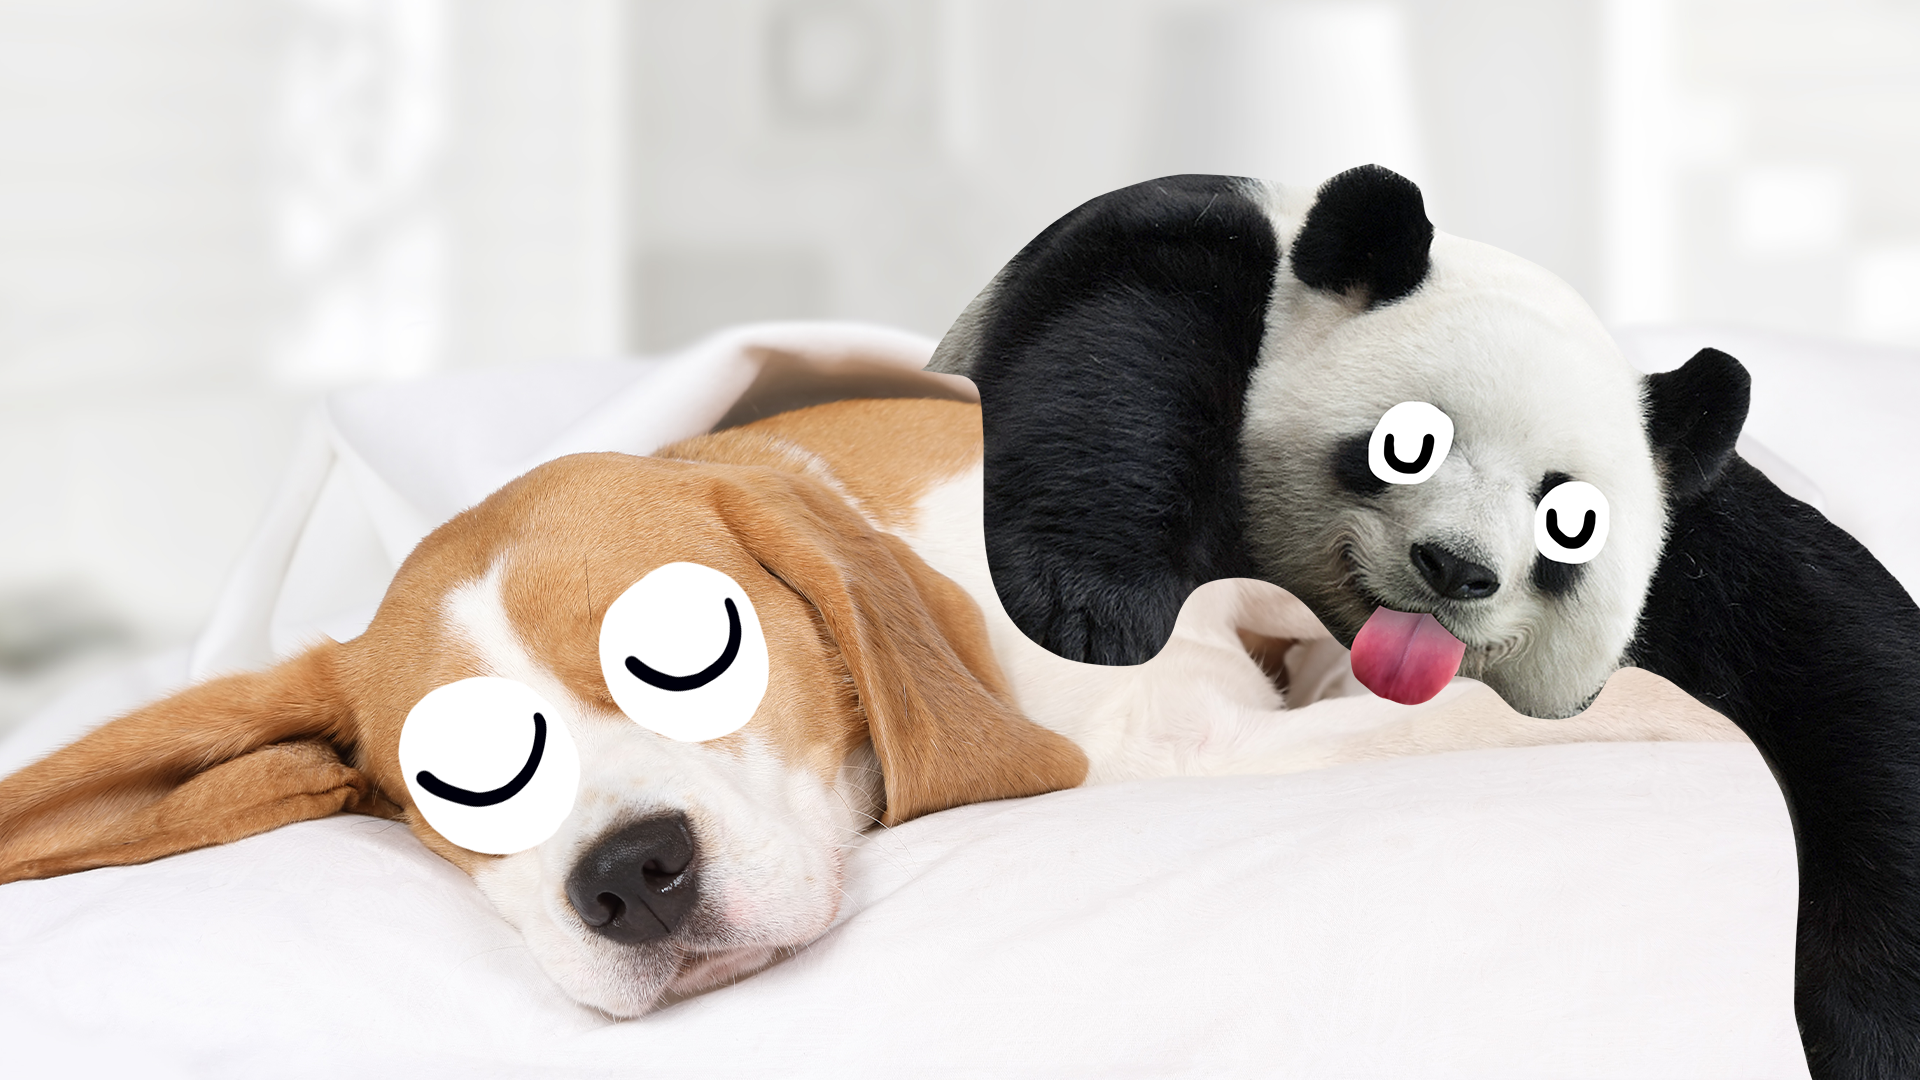 Sleepy dog and panda